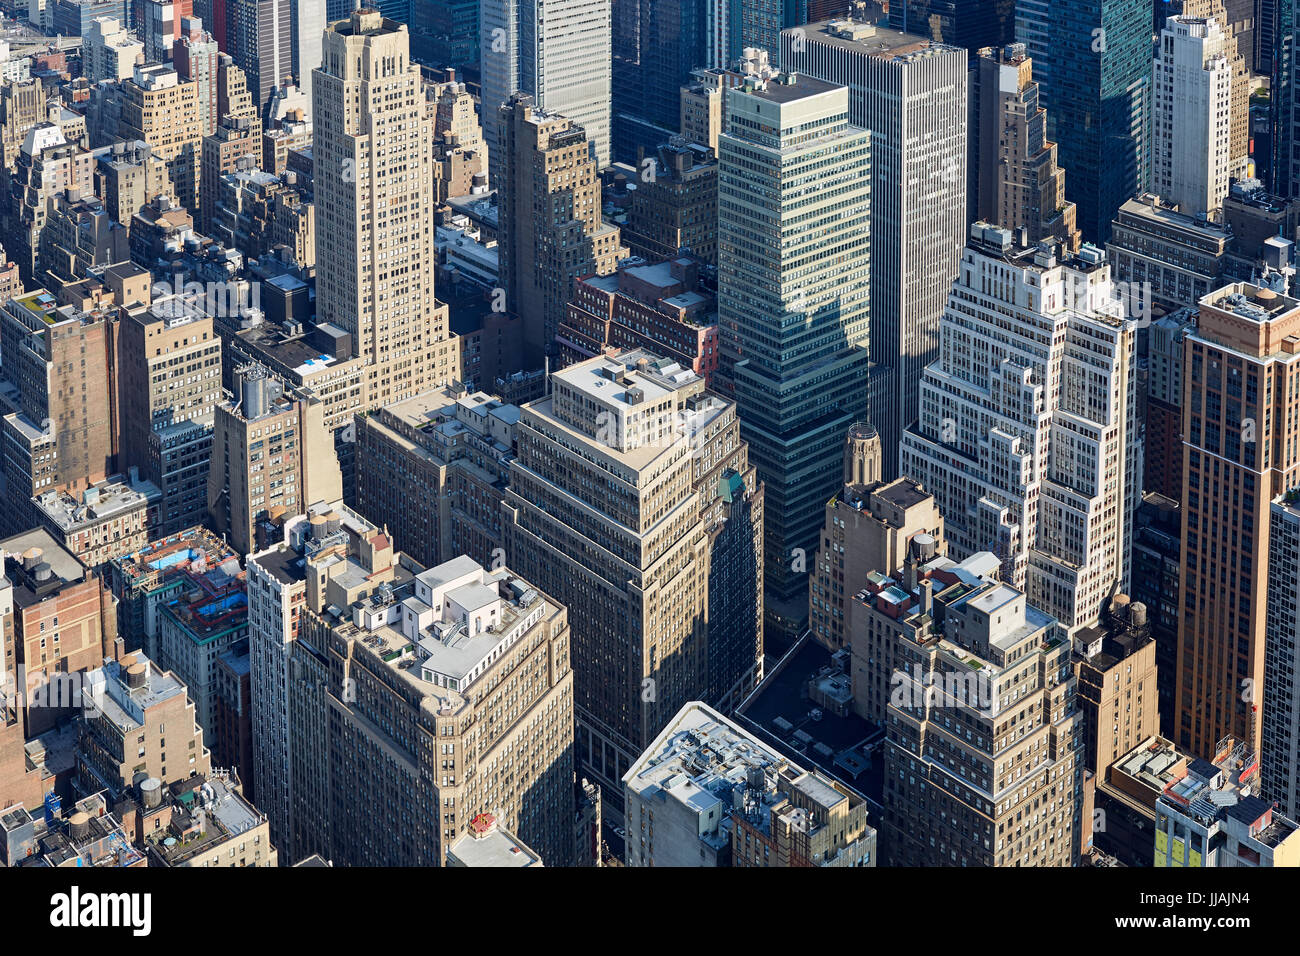 New York City Manhattan skyline vue aérienne avec des gratte-ciel et les rues Banque D'Images